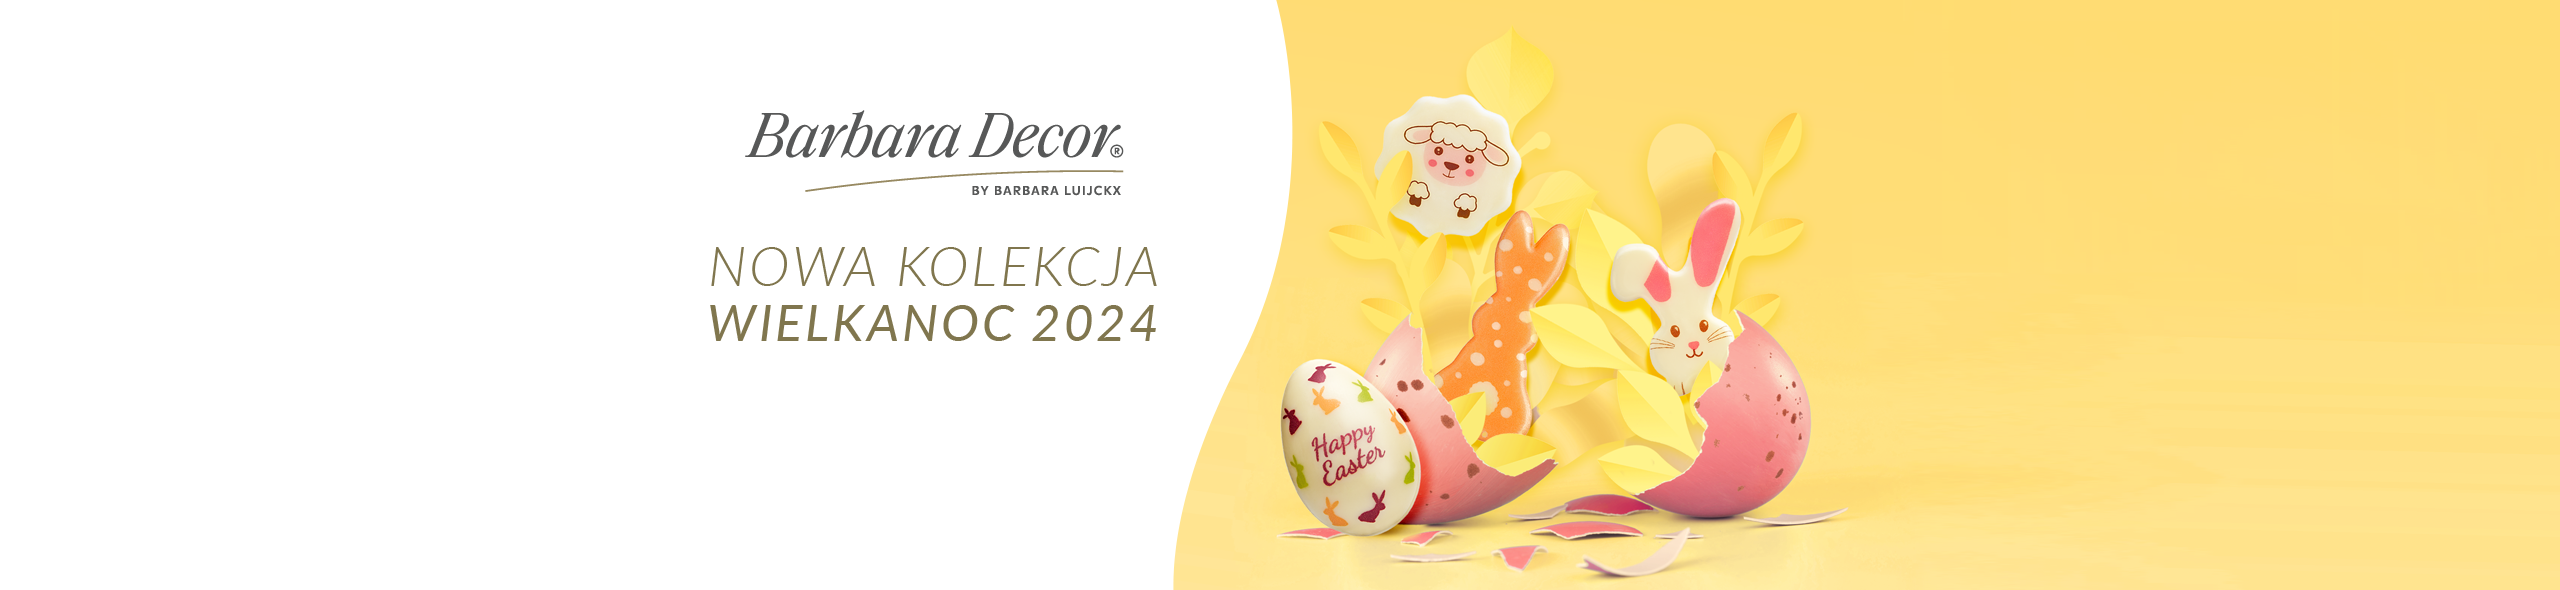 Nowa czekoladowa kolekcja na Wielkanoc by Barbara Decor